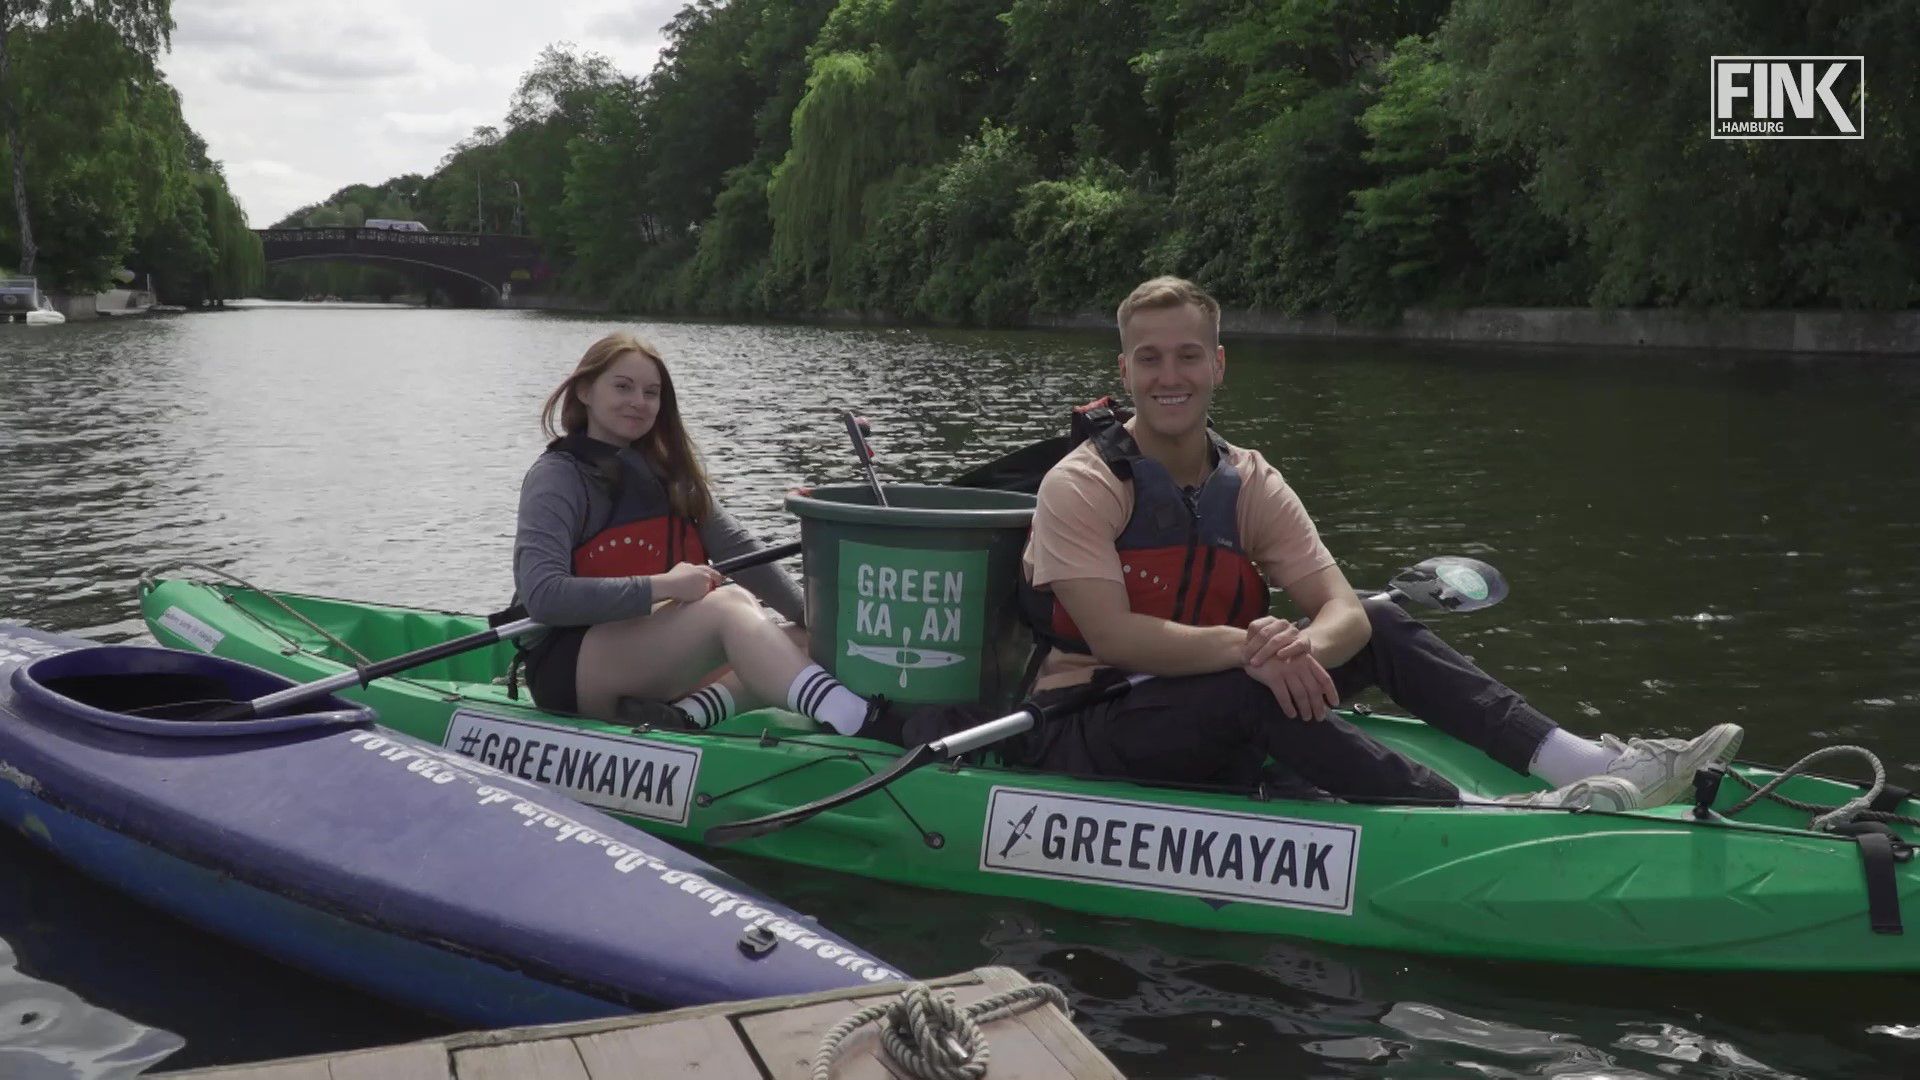 Green Kayak ausprobiert: So funktioniert's - FINK.HAMBURG